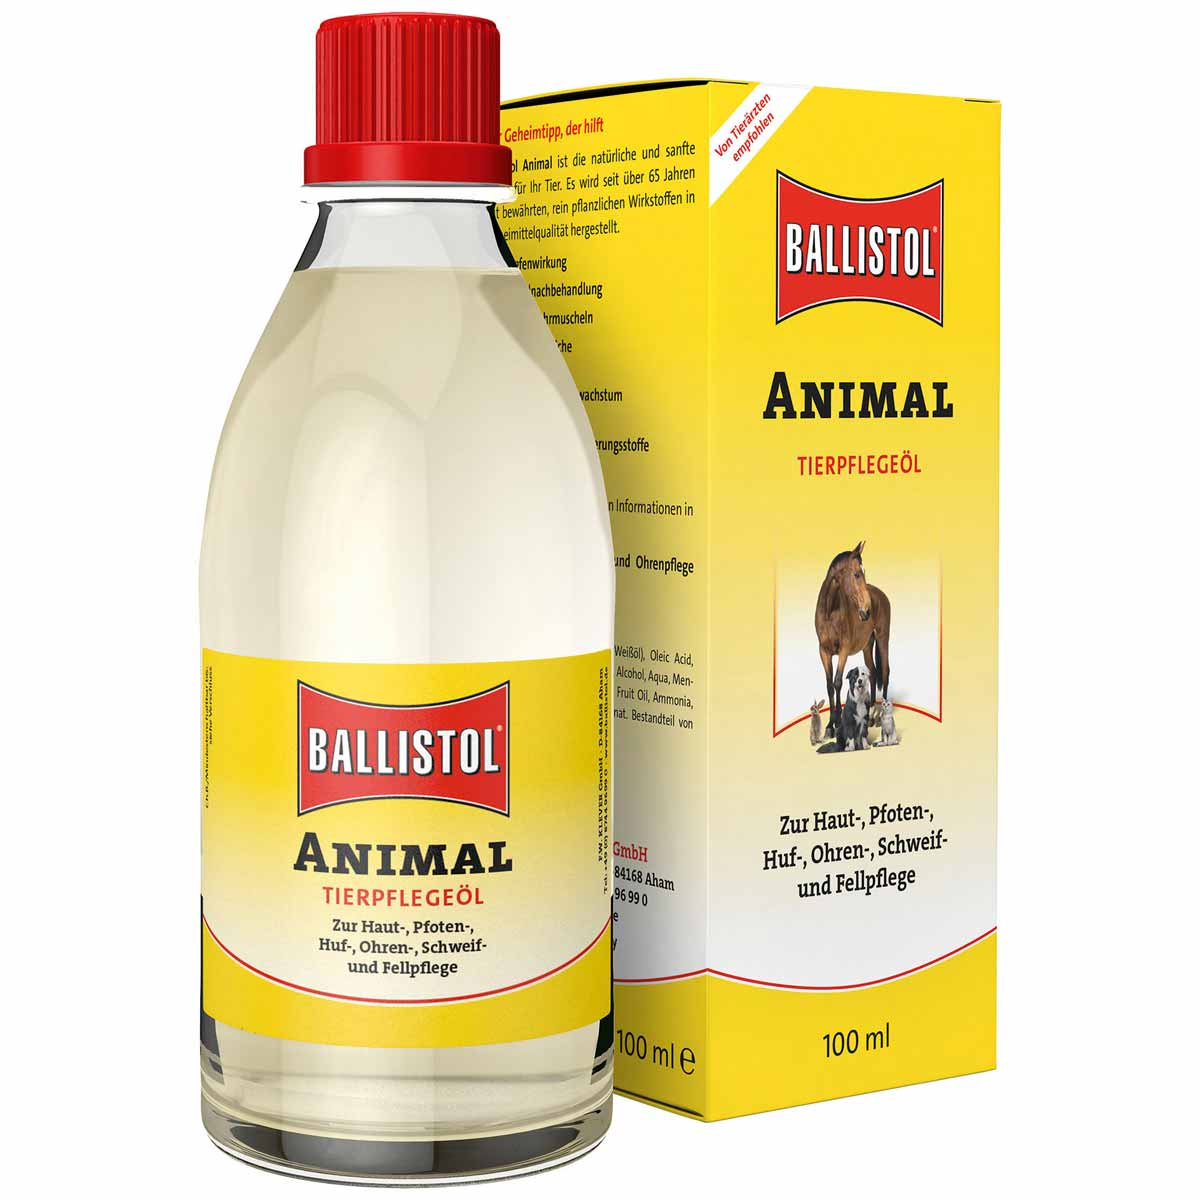 BALLISTOL Animal pet care oil 100 ml